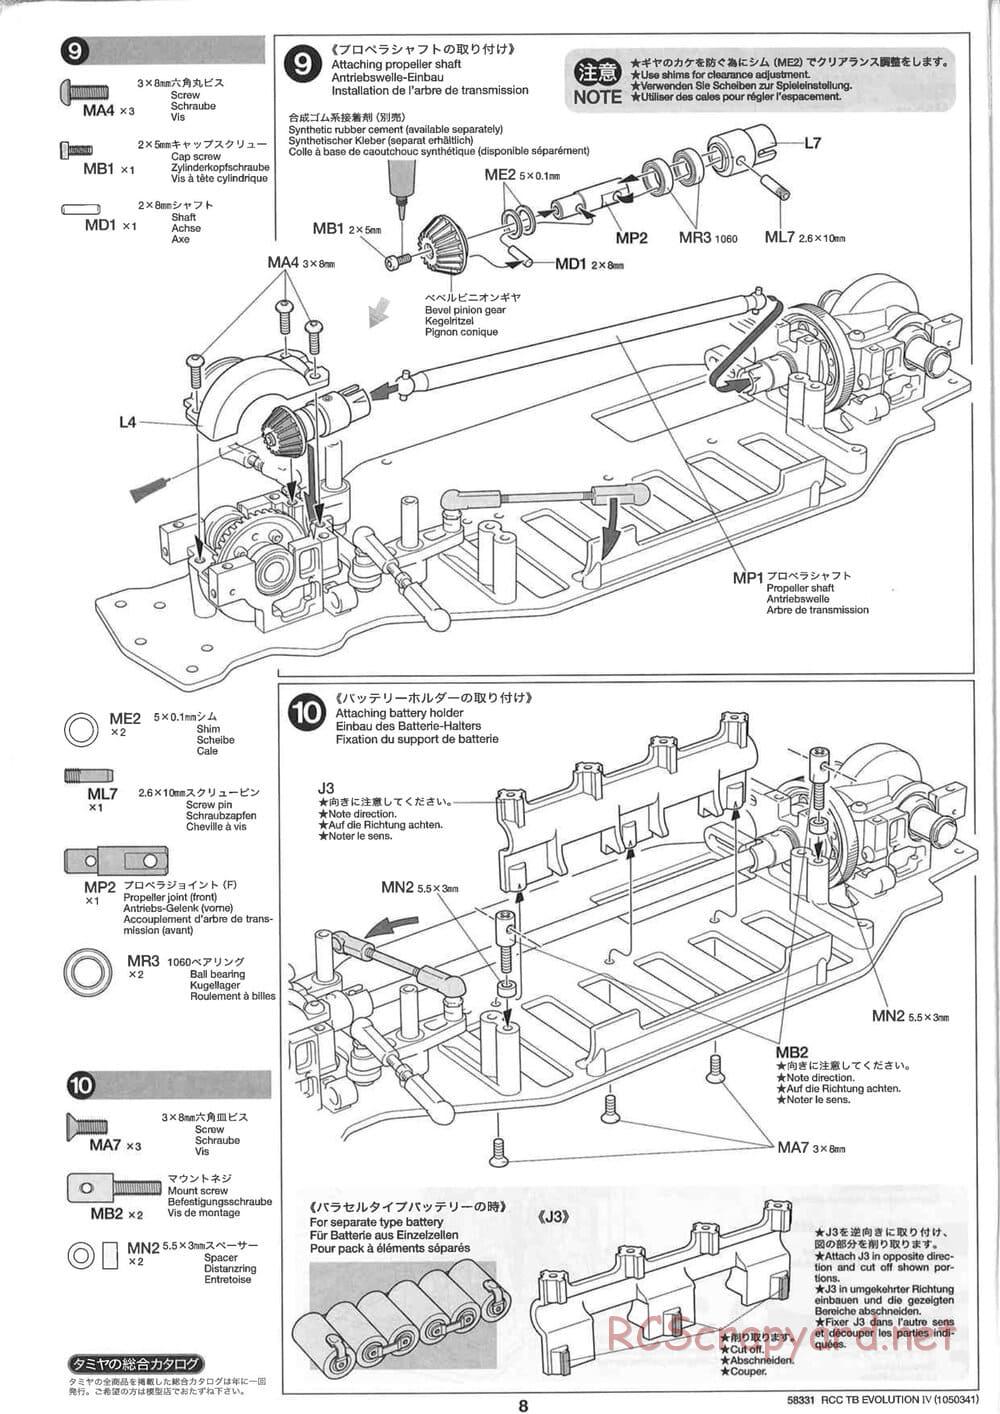 Tamiya - TB Evolution IV Chassis - Manual - Page 8